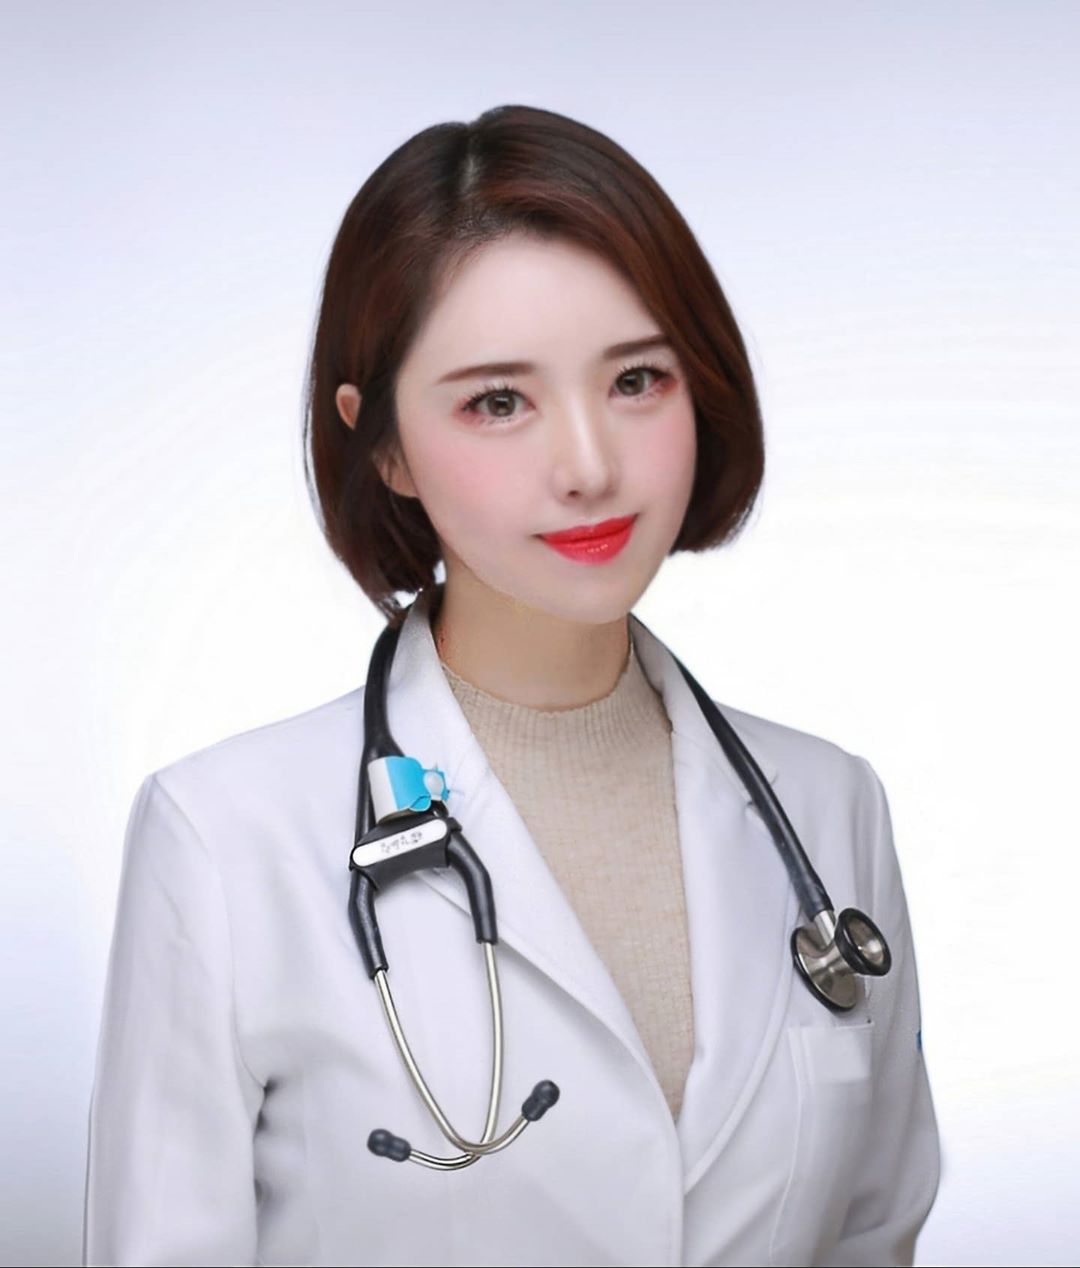 Các bạn thân mến, hôm nay chúng ta sẽ được chiêm ngưỡng vẻ đẹp quyến rũ của một bác sĩ đến từ Hàn Quốc trong hình ảnh này. Đối với những ai có niềm đam mê với y học và nhan sắc đẹp, hãy đến với bức ảnh này để được cảm nhận ngay tựa như vào một tràng giang hồ hoàn mỹ.